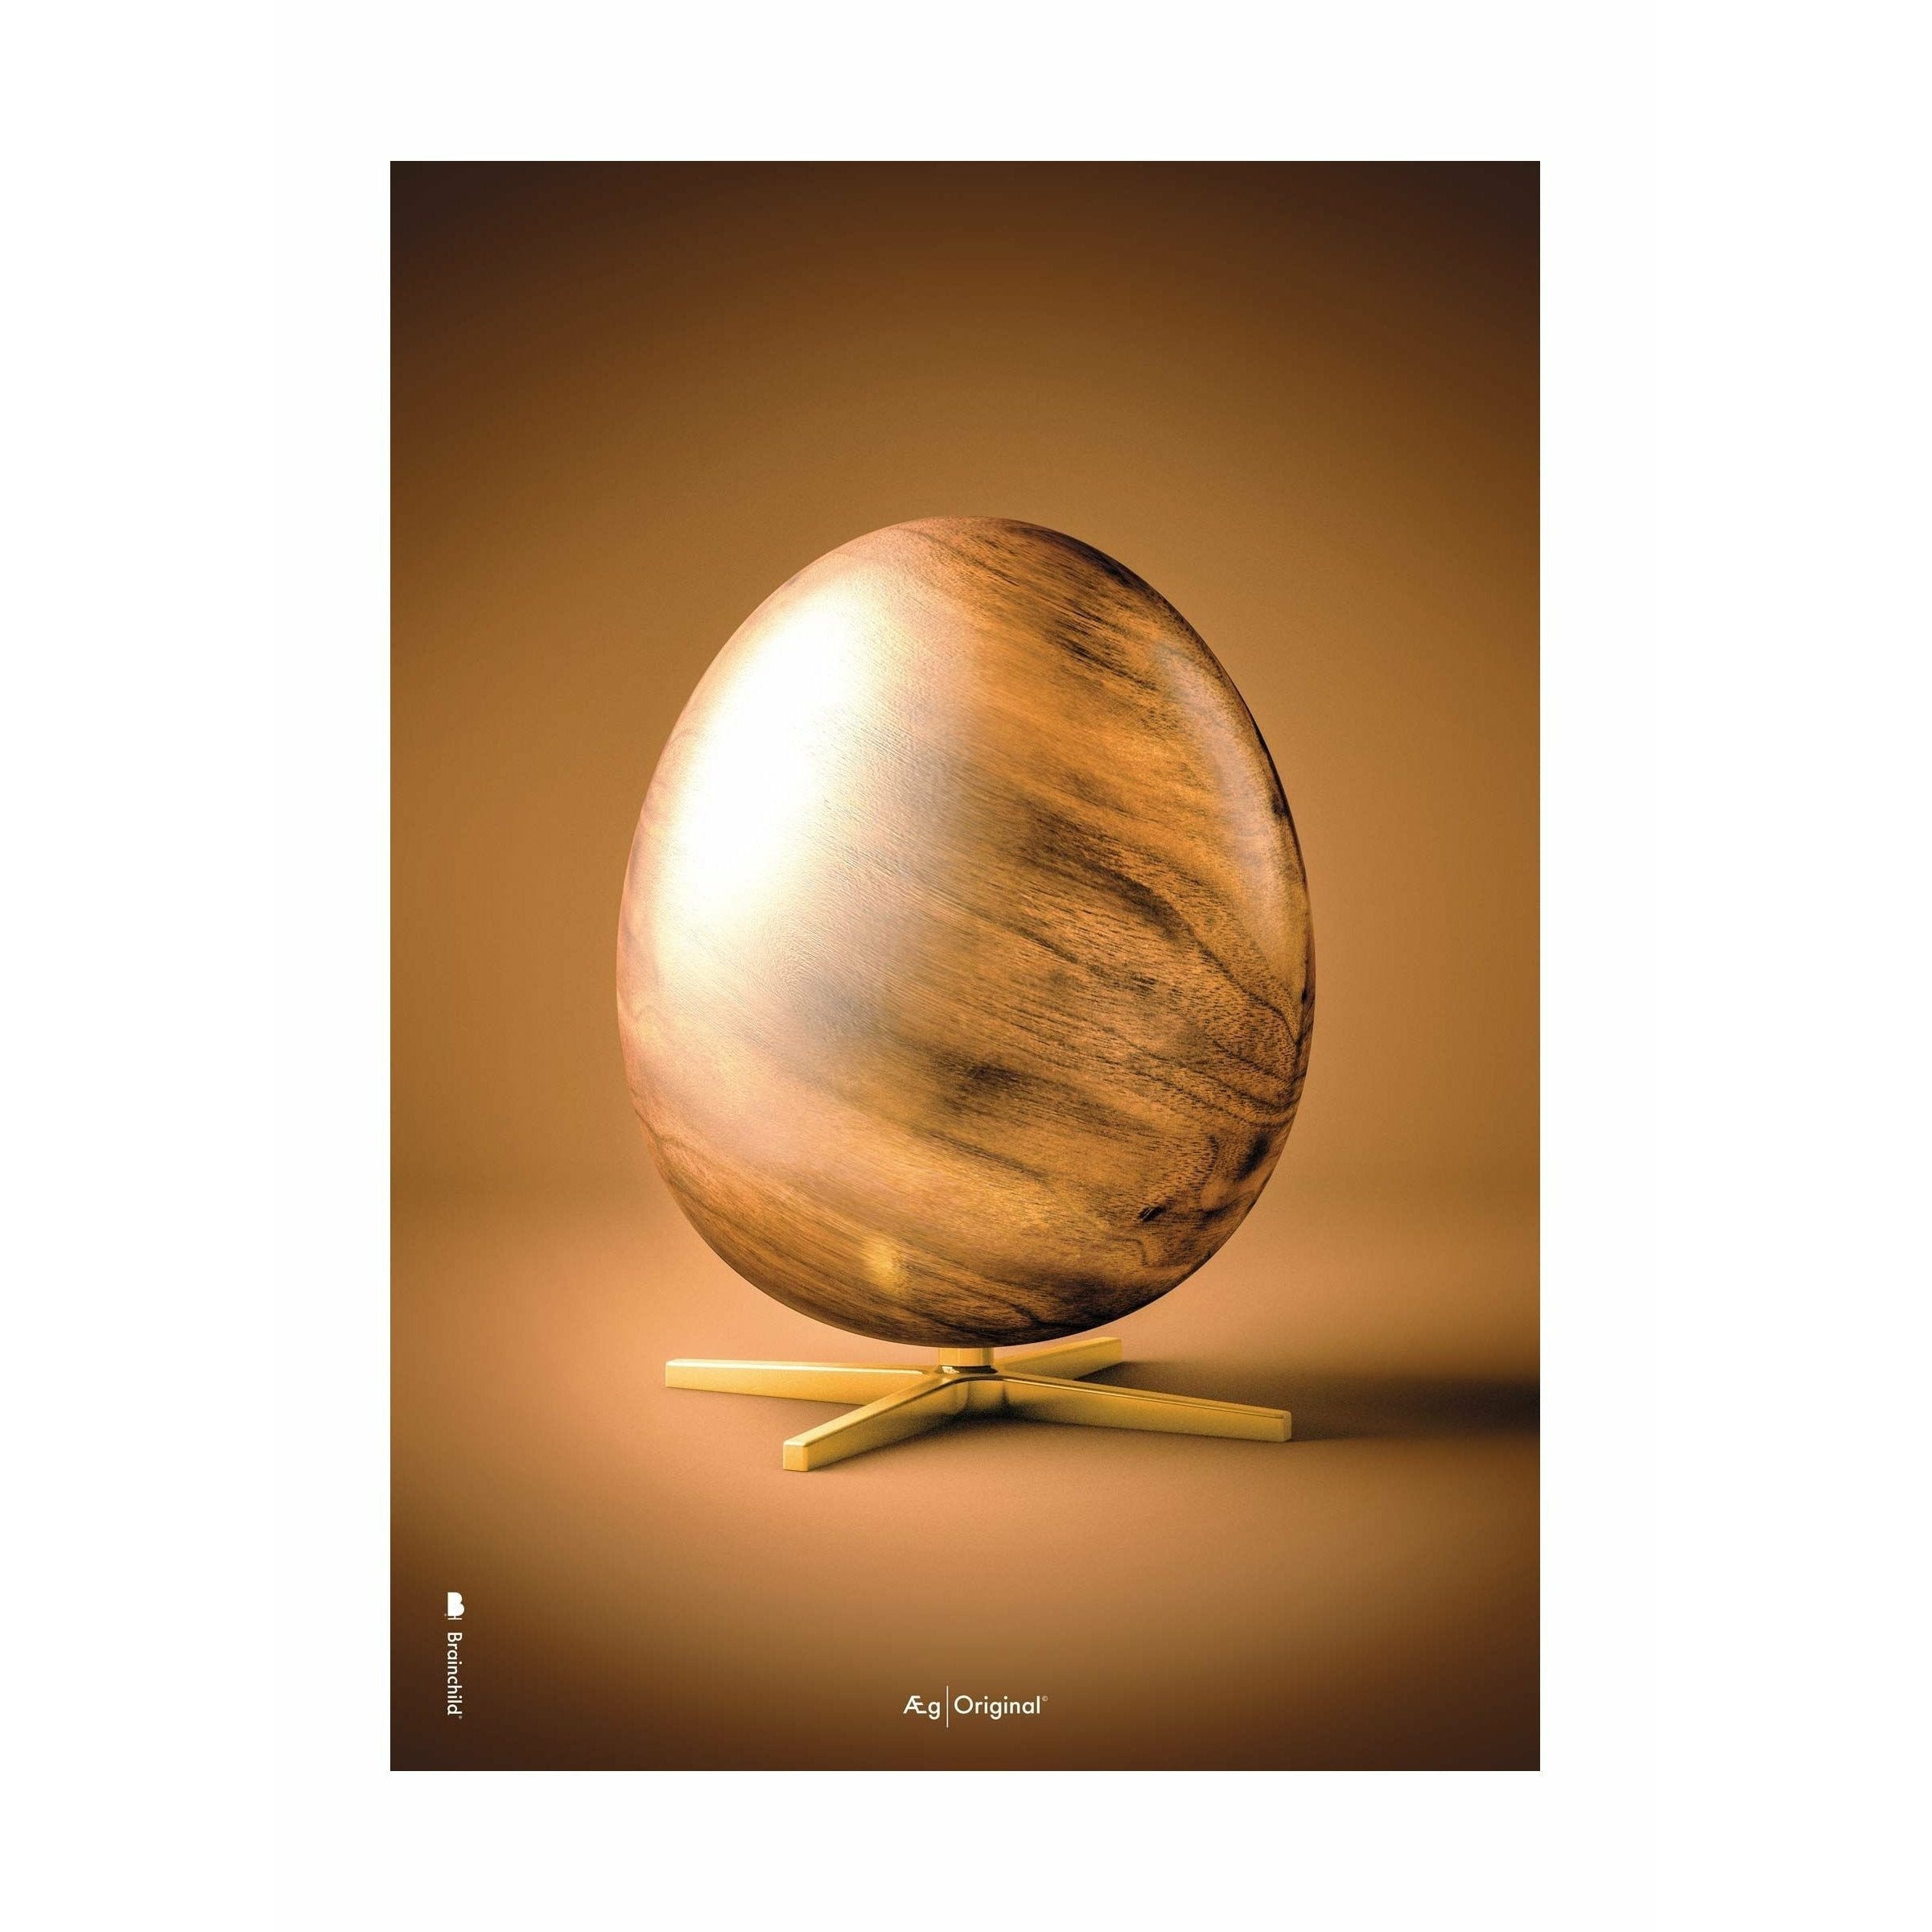 brainchild Eierfiguren Poster ohne Rahmen 30 x40 cm, braun